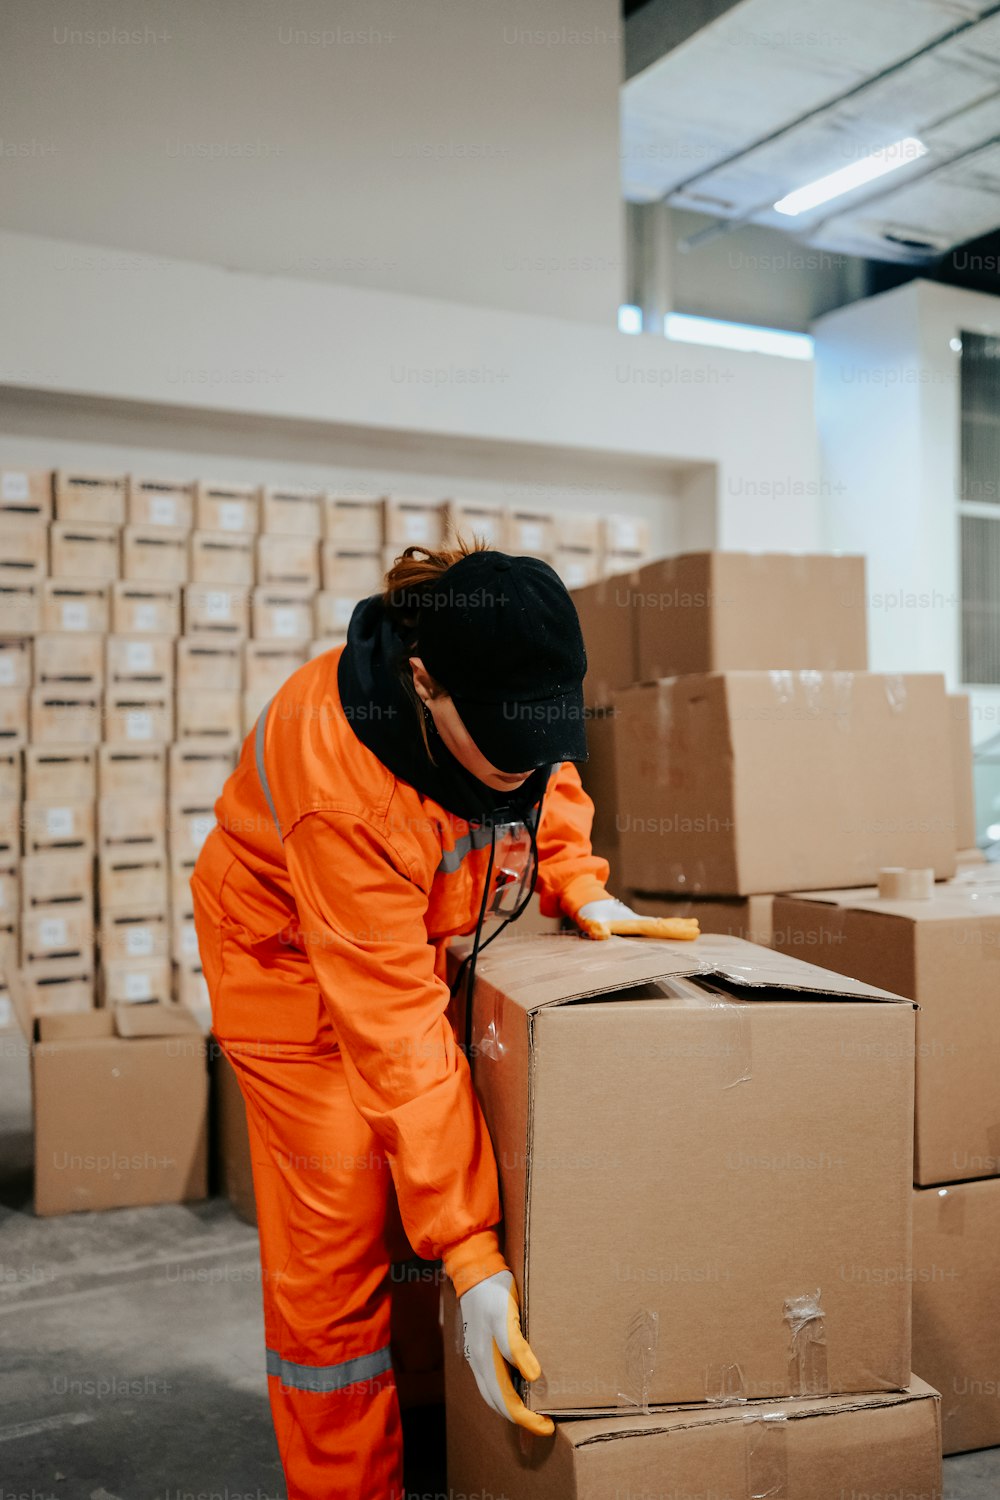 주황색 점프수트를 입은 남자가 상자에서 일하고 있다